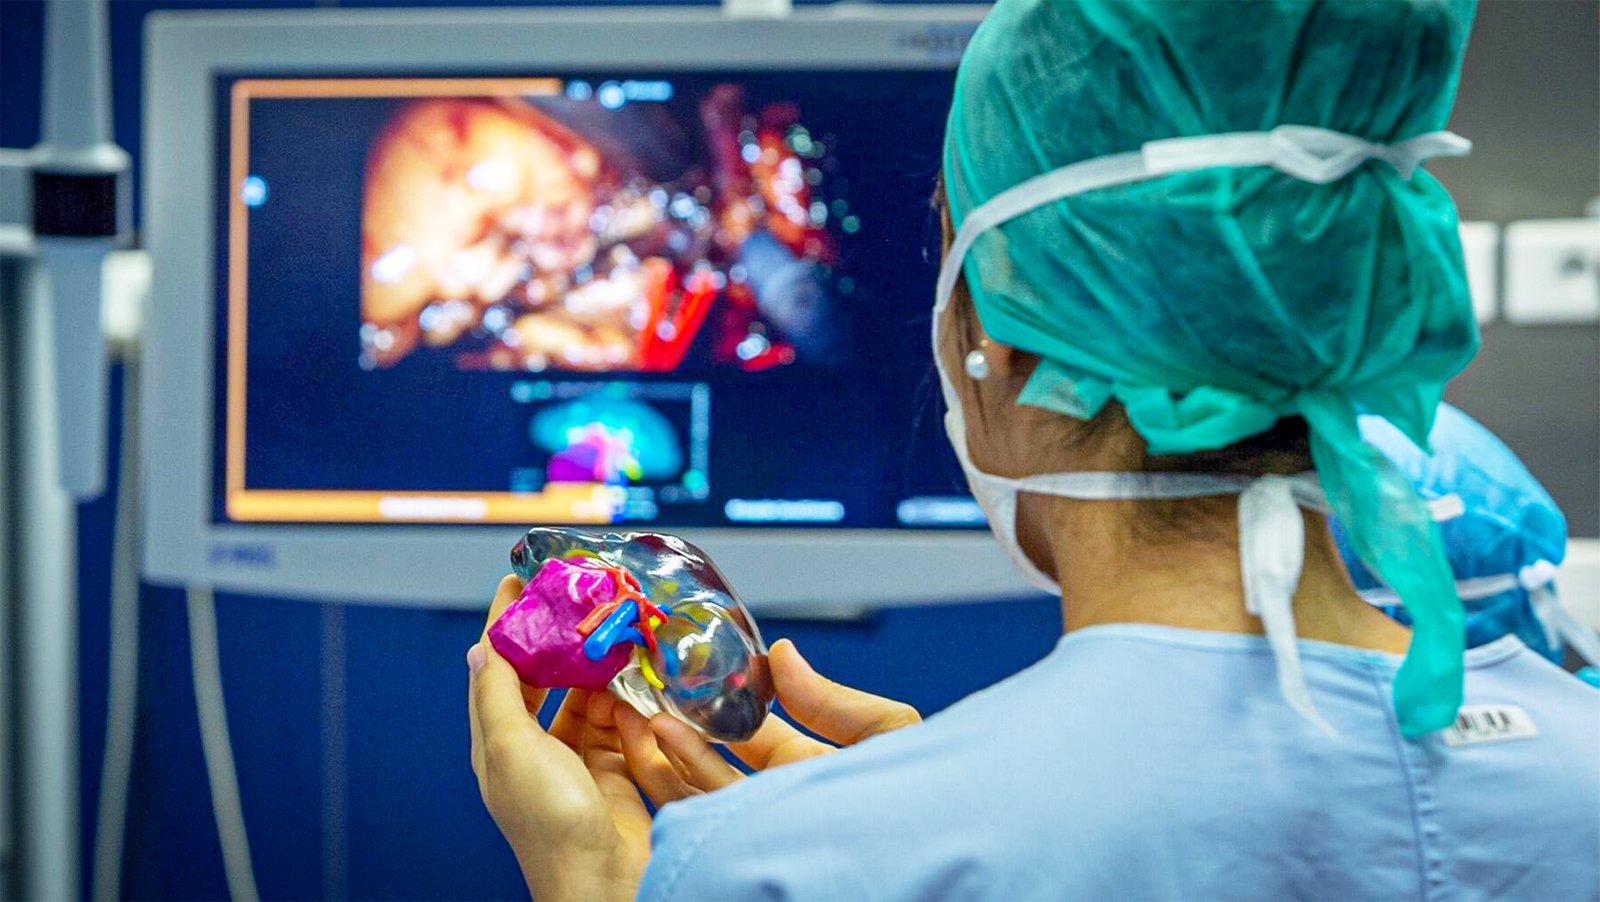 ストラタシス・ディレクト・マニュファクチャリングが医療3Dプリントセンターを開設